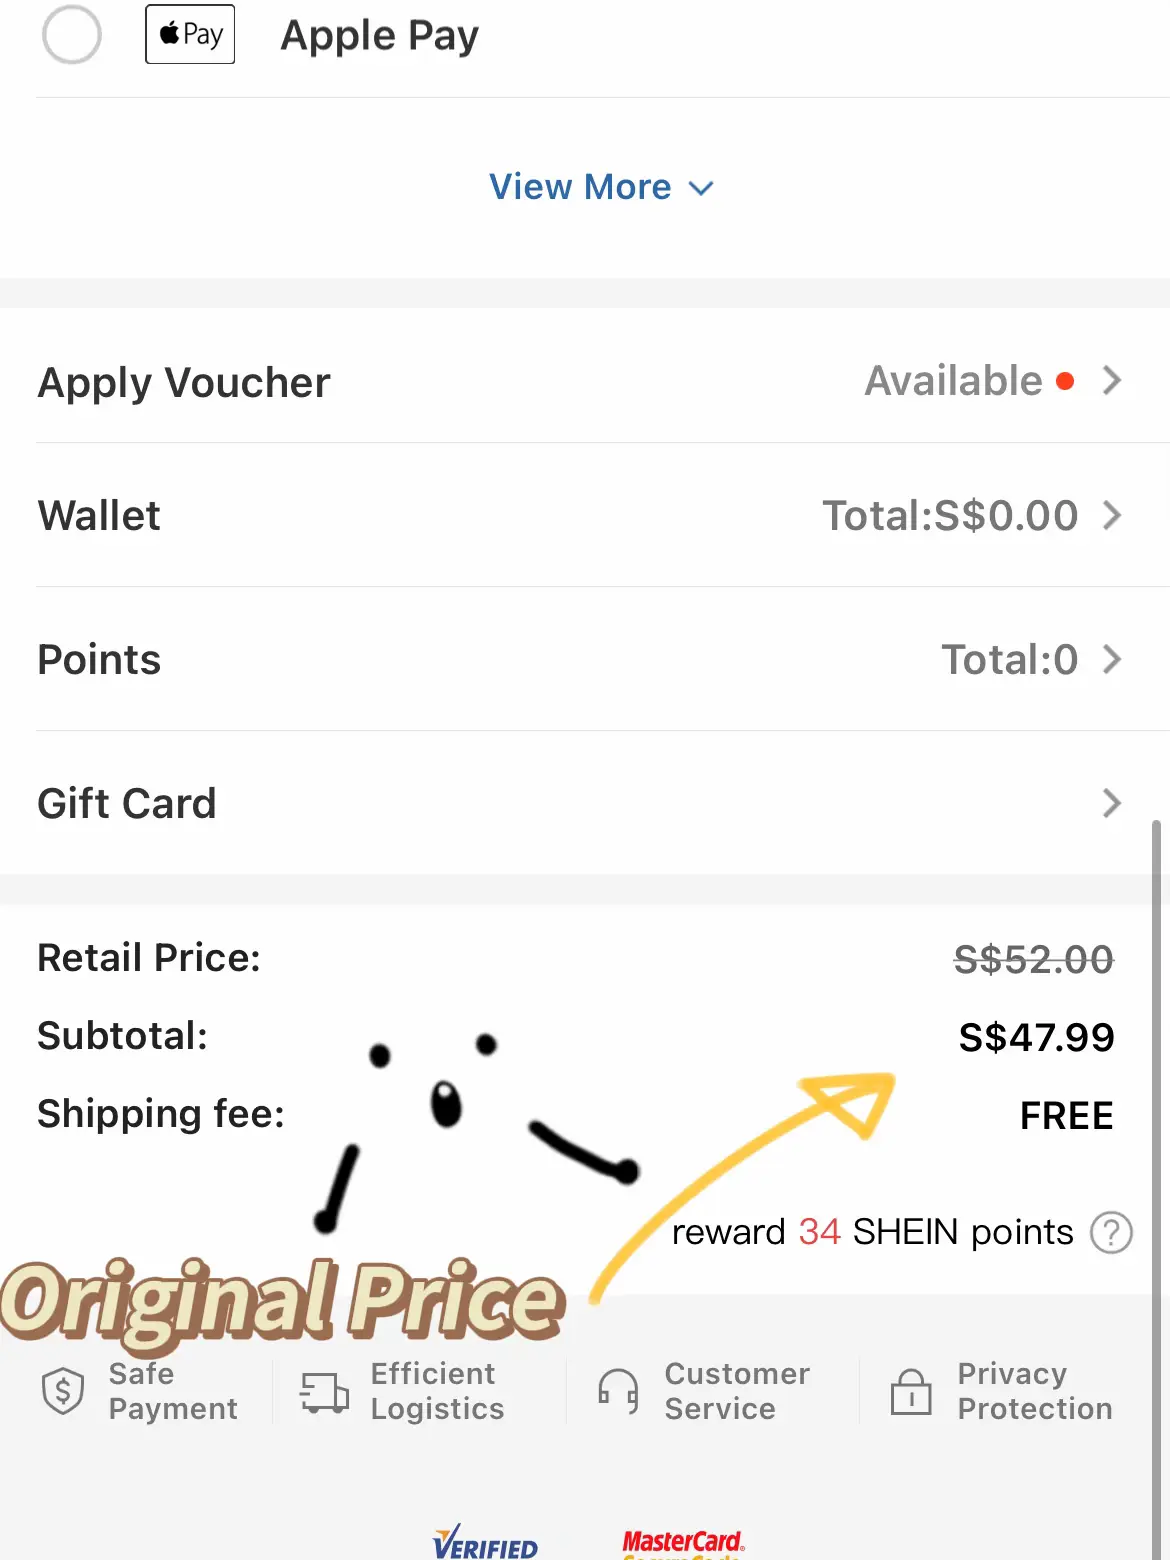 SHEIN bulk purchase discounts - Lemon8 Search